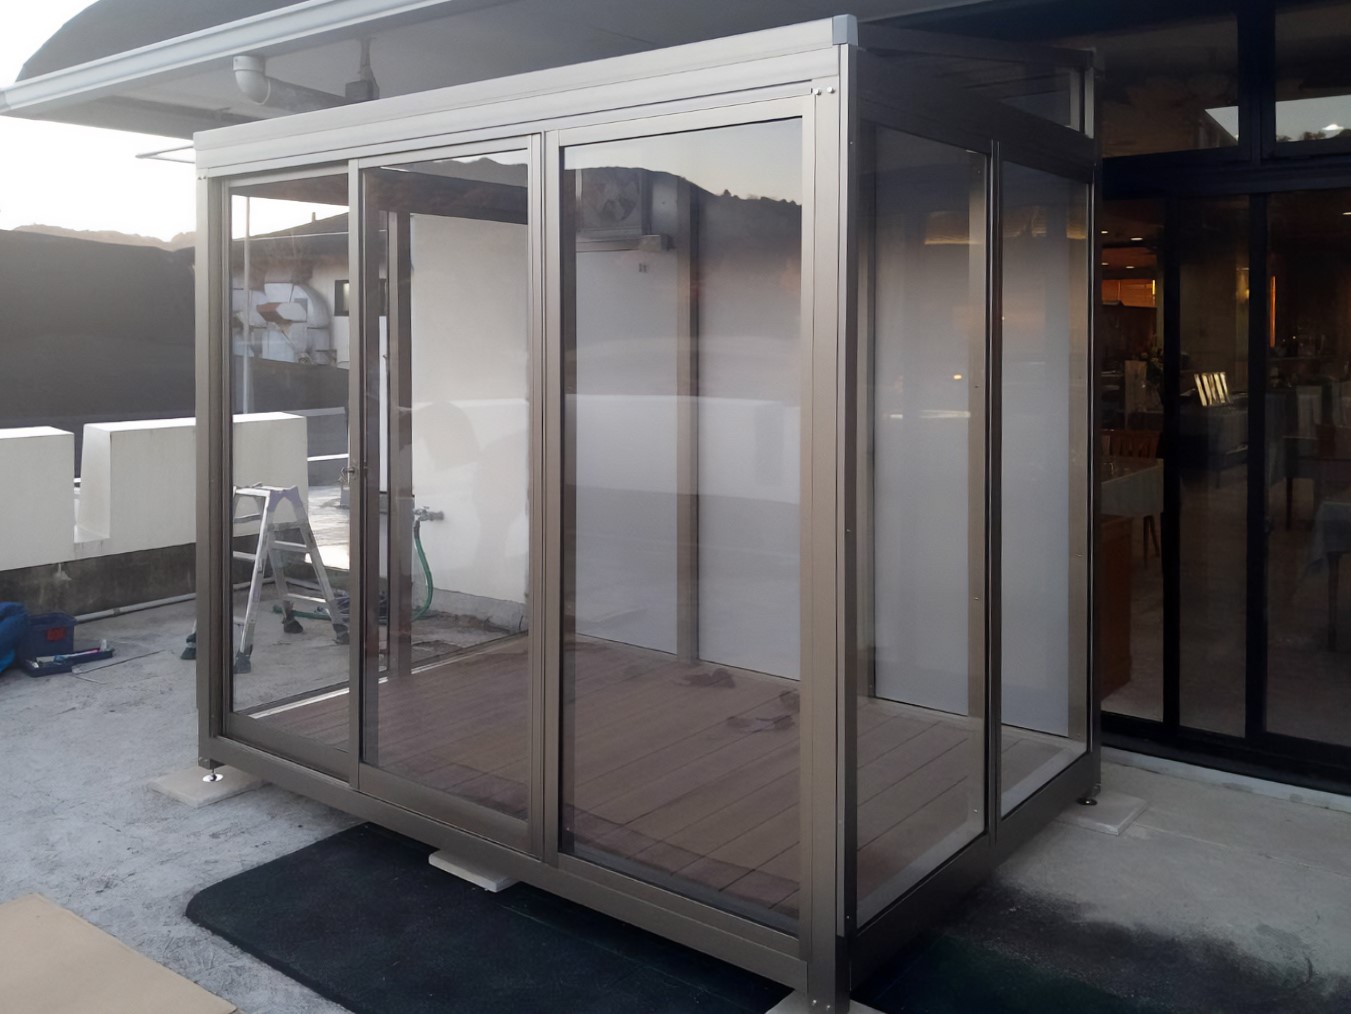 ゴルフ場の屋外テラスにユニットハウス式の喫煙室を設置しました